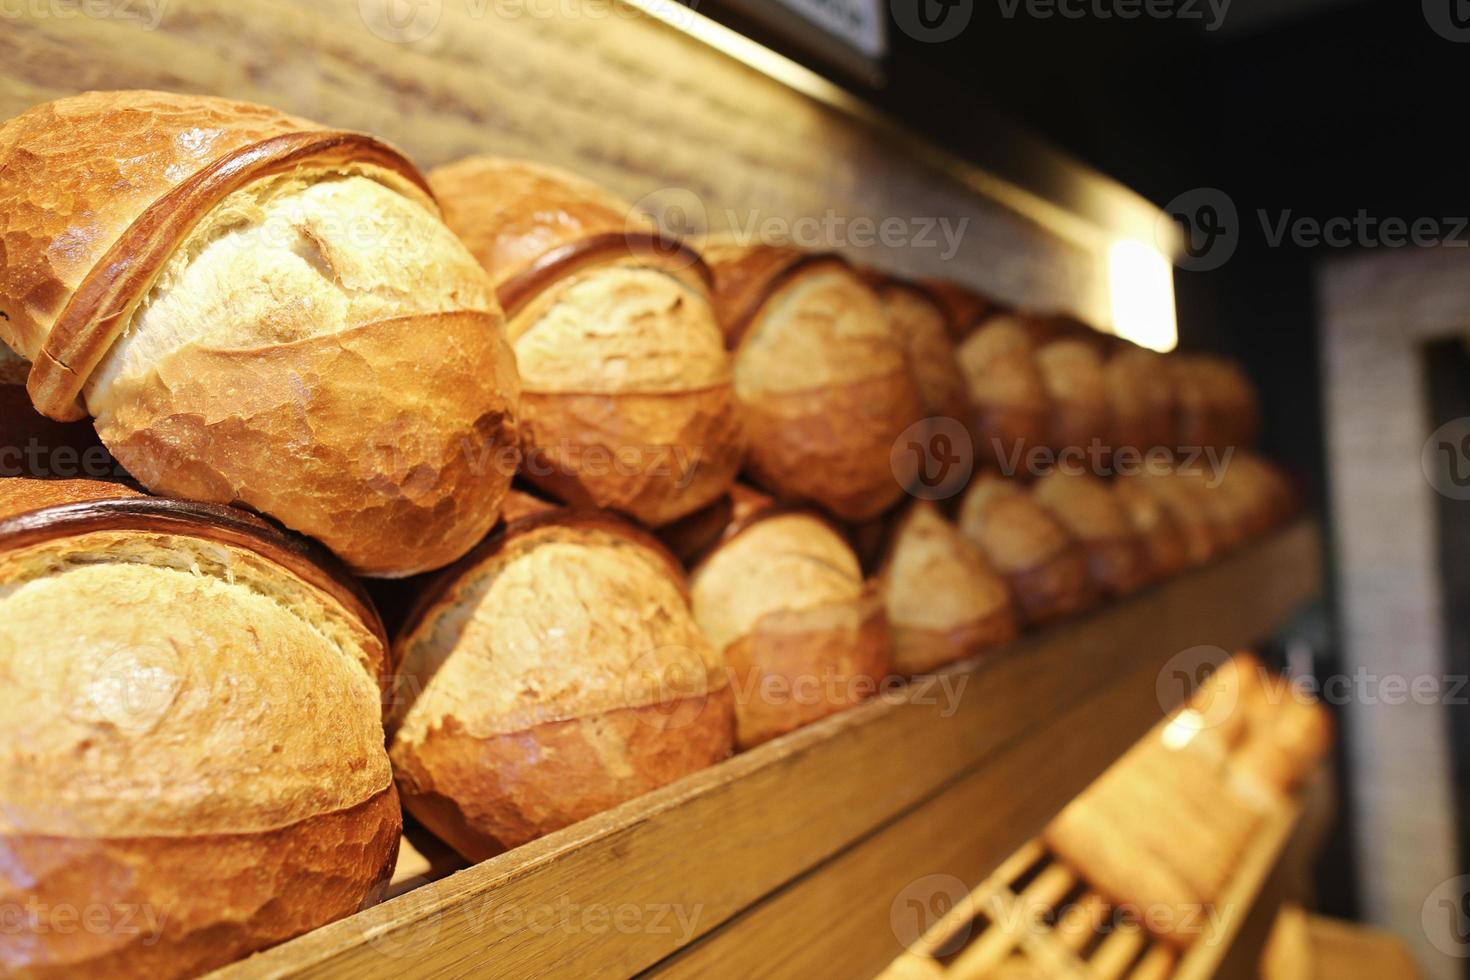 sekventiellt bröd på hyllan, bageriprodukter, bakverk och bageri foto